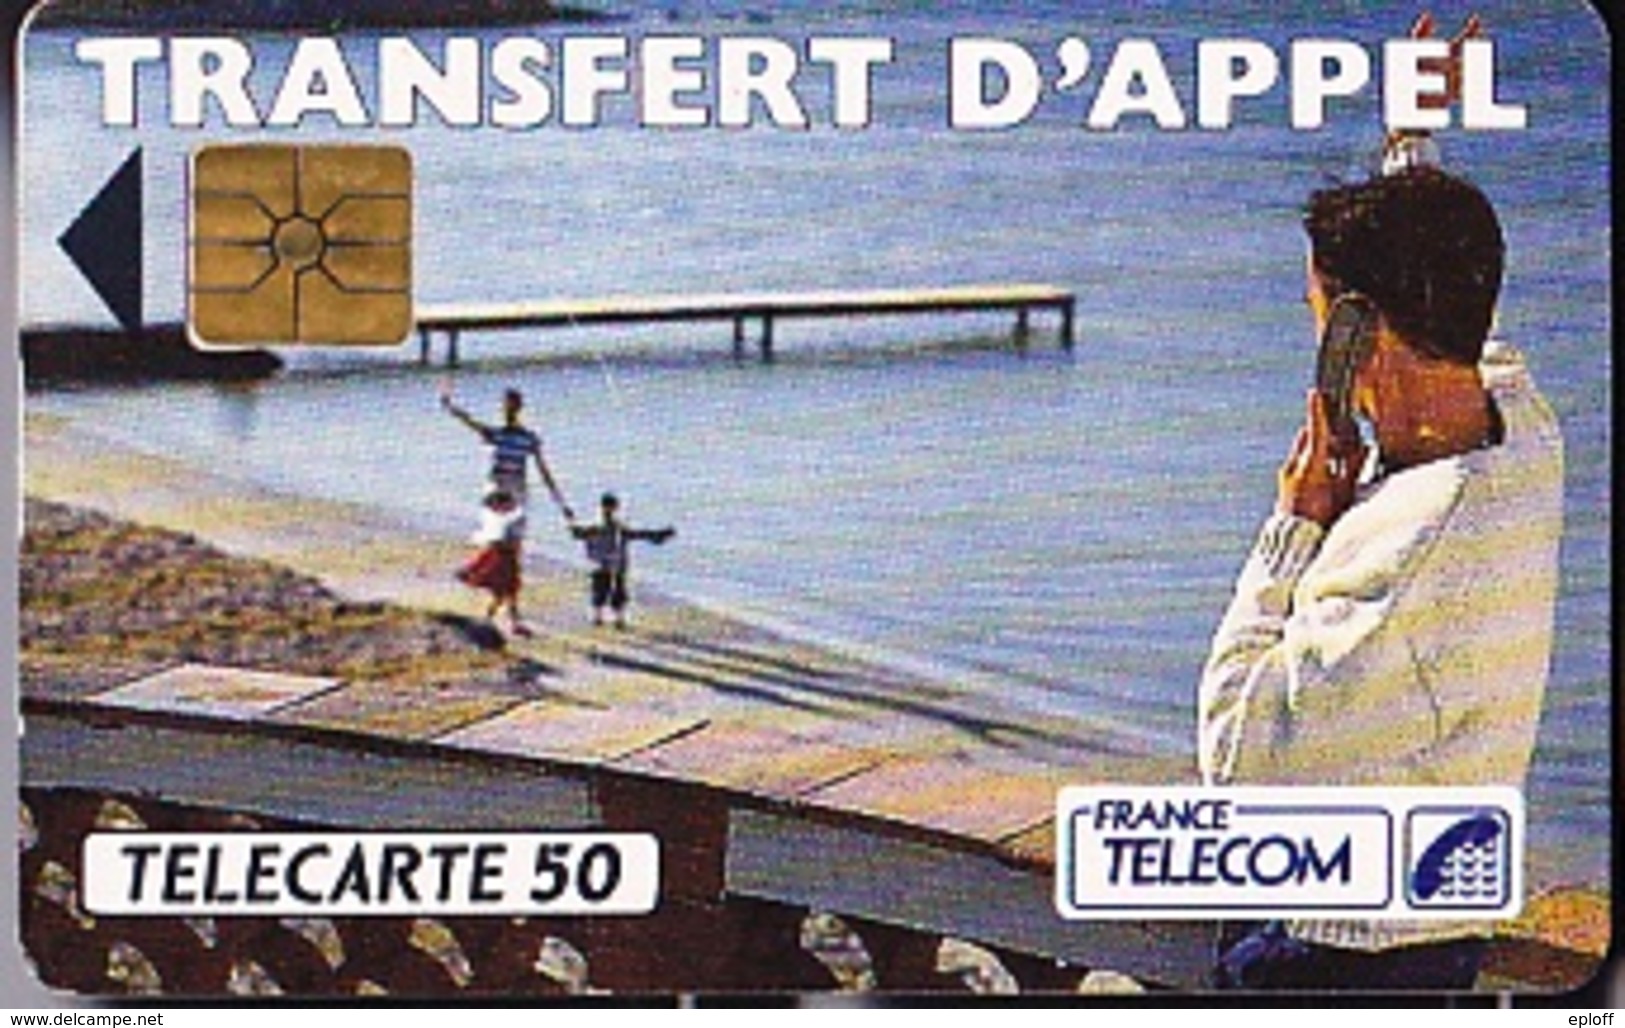 FRANCE TELECOM 50 Unités  Transfert D'Appel  De 06 1992    Tirage De 1 000 000 D'exemplaires - Telecom Operators